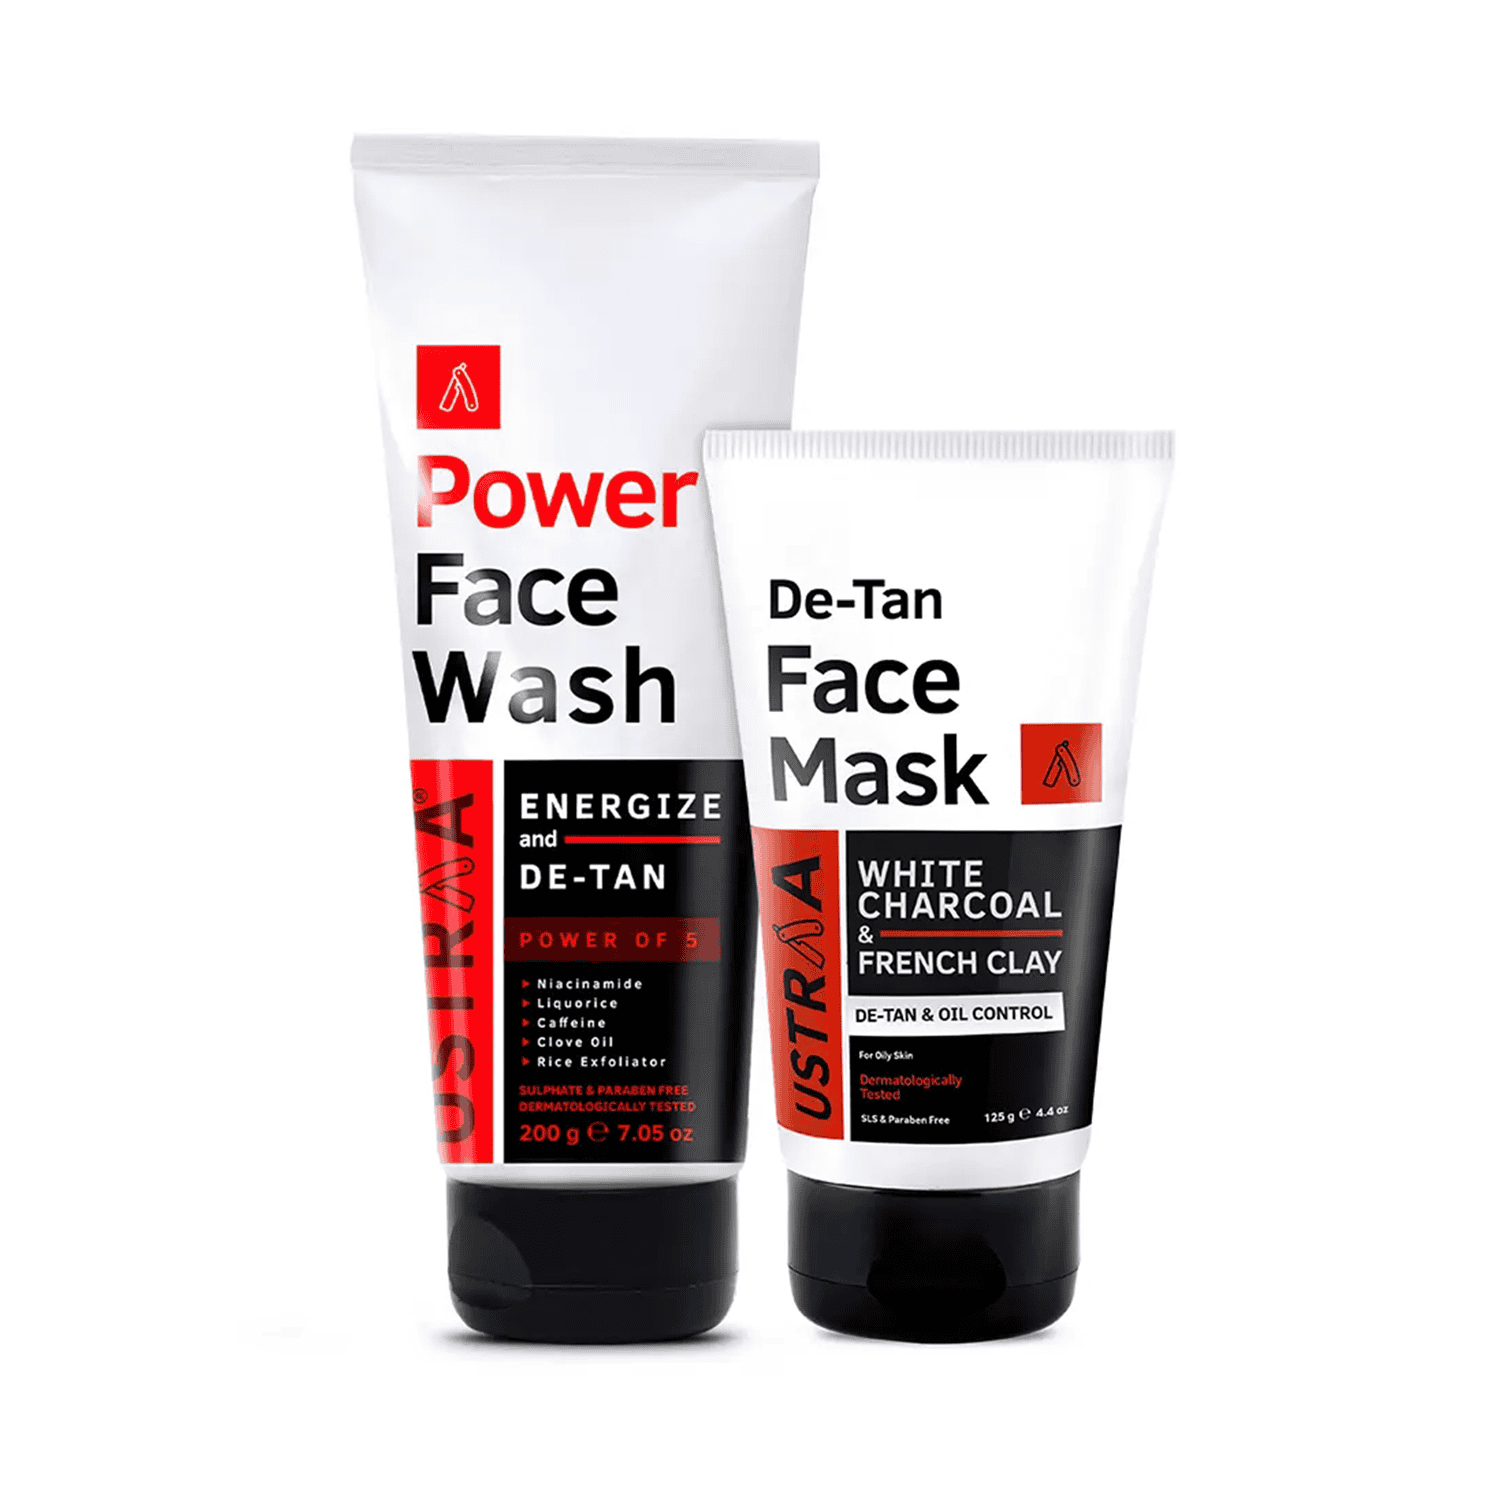 Ustraa Power Face Wash De-tan & De-tan Face Mask